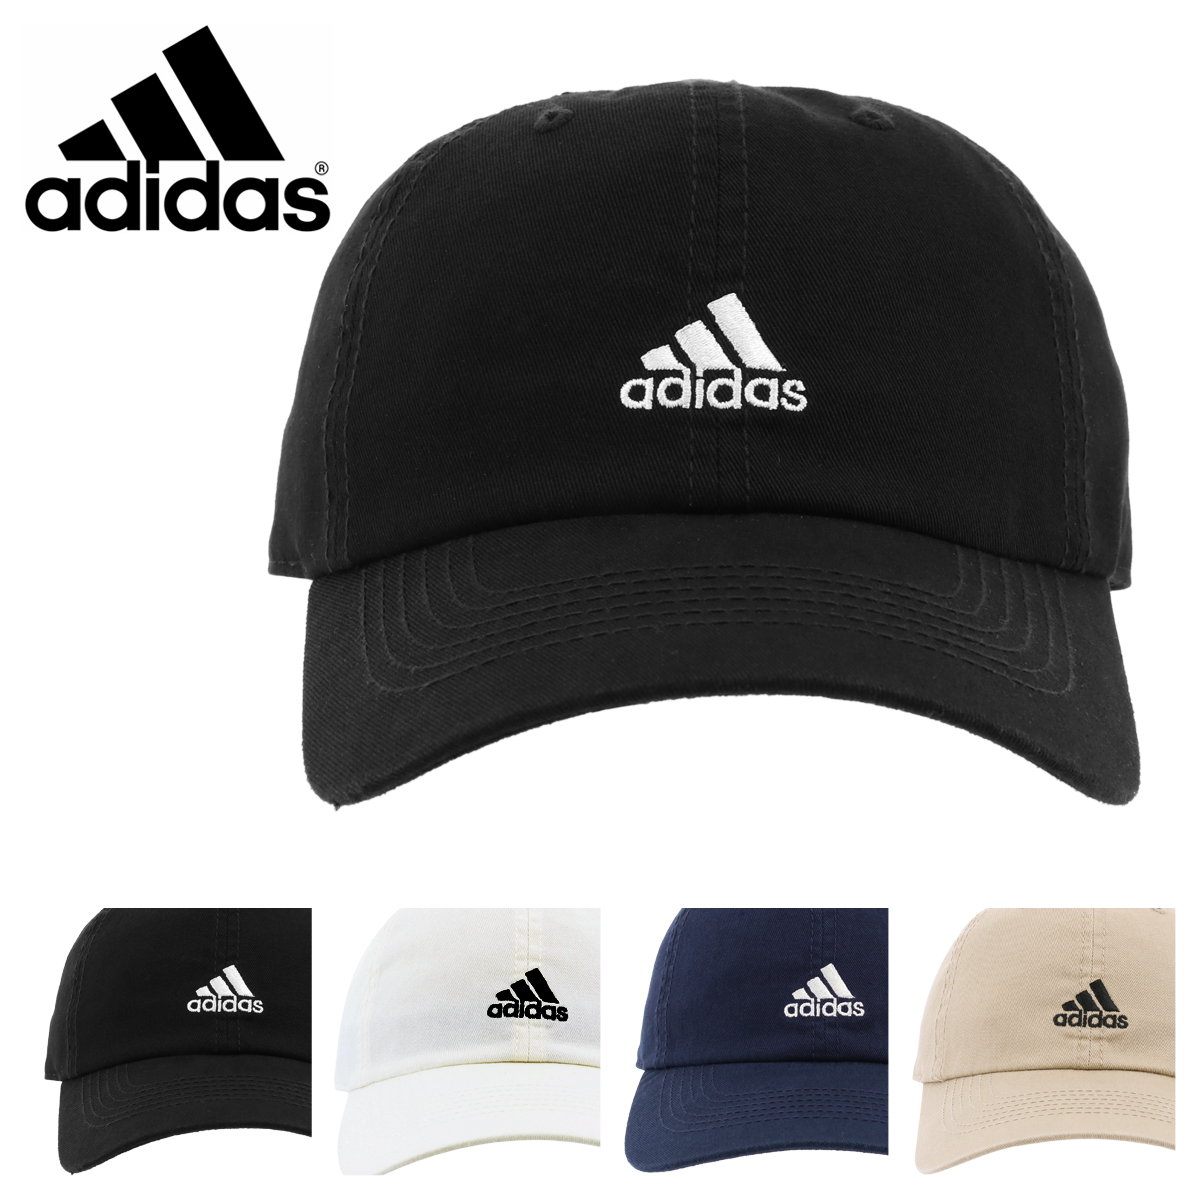 楽天市場 アディダス キャップ メンズ レディース 105 Adidas 帽子 コットン サイズ調整可能 即日発送 Bef サックスバー